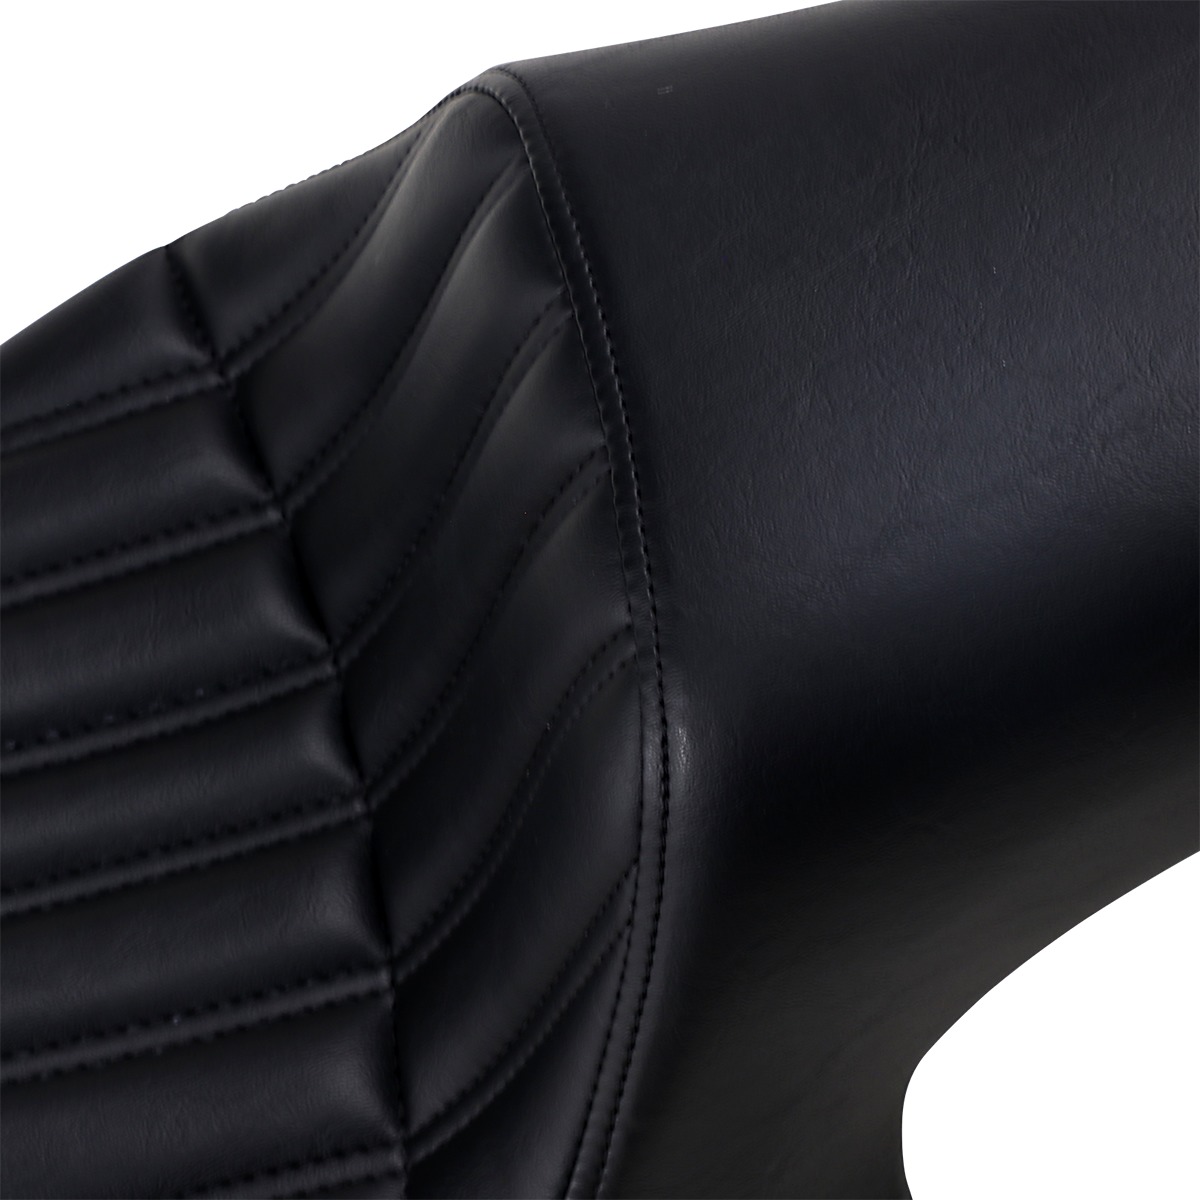 Profiler Knuckle Vinyl 2-Up Seat Black Gel - For 13-20 Yamaha XVS950 Bolt - Click Image to Close